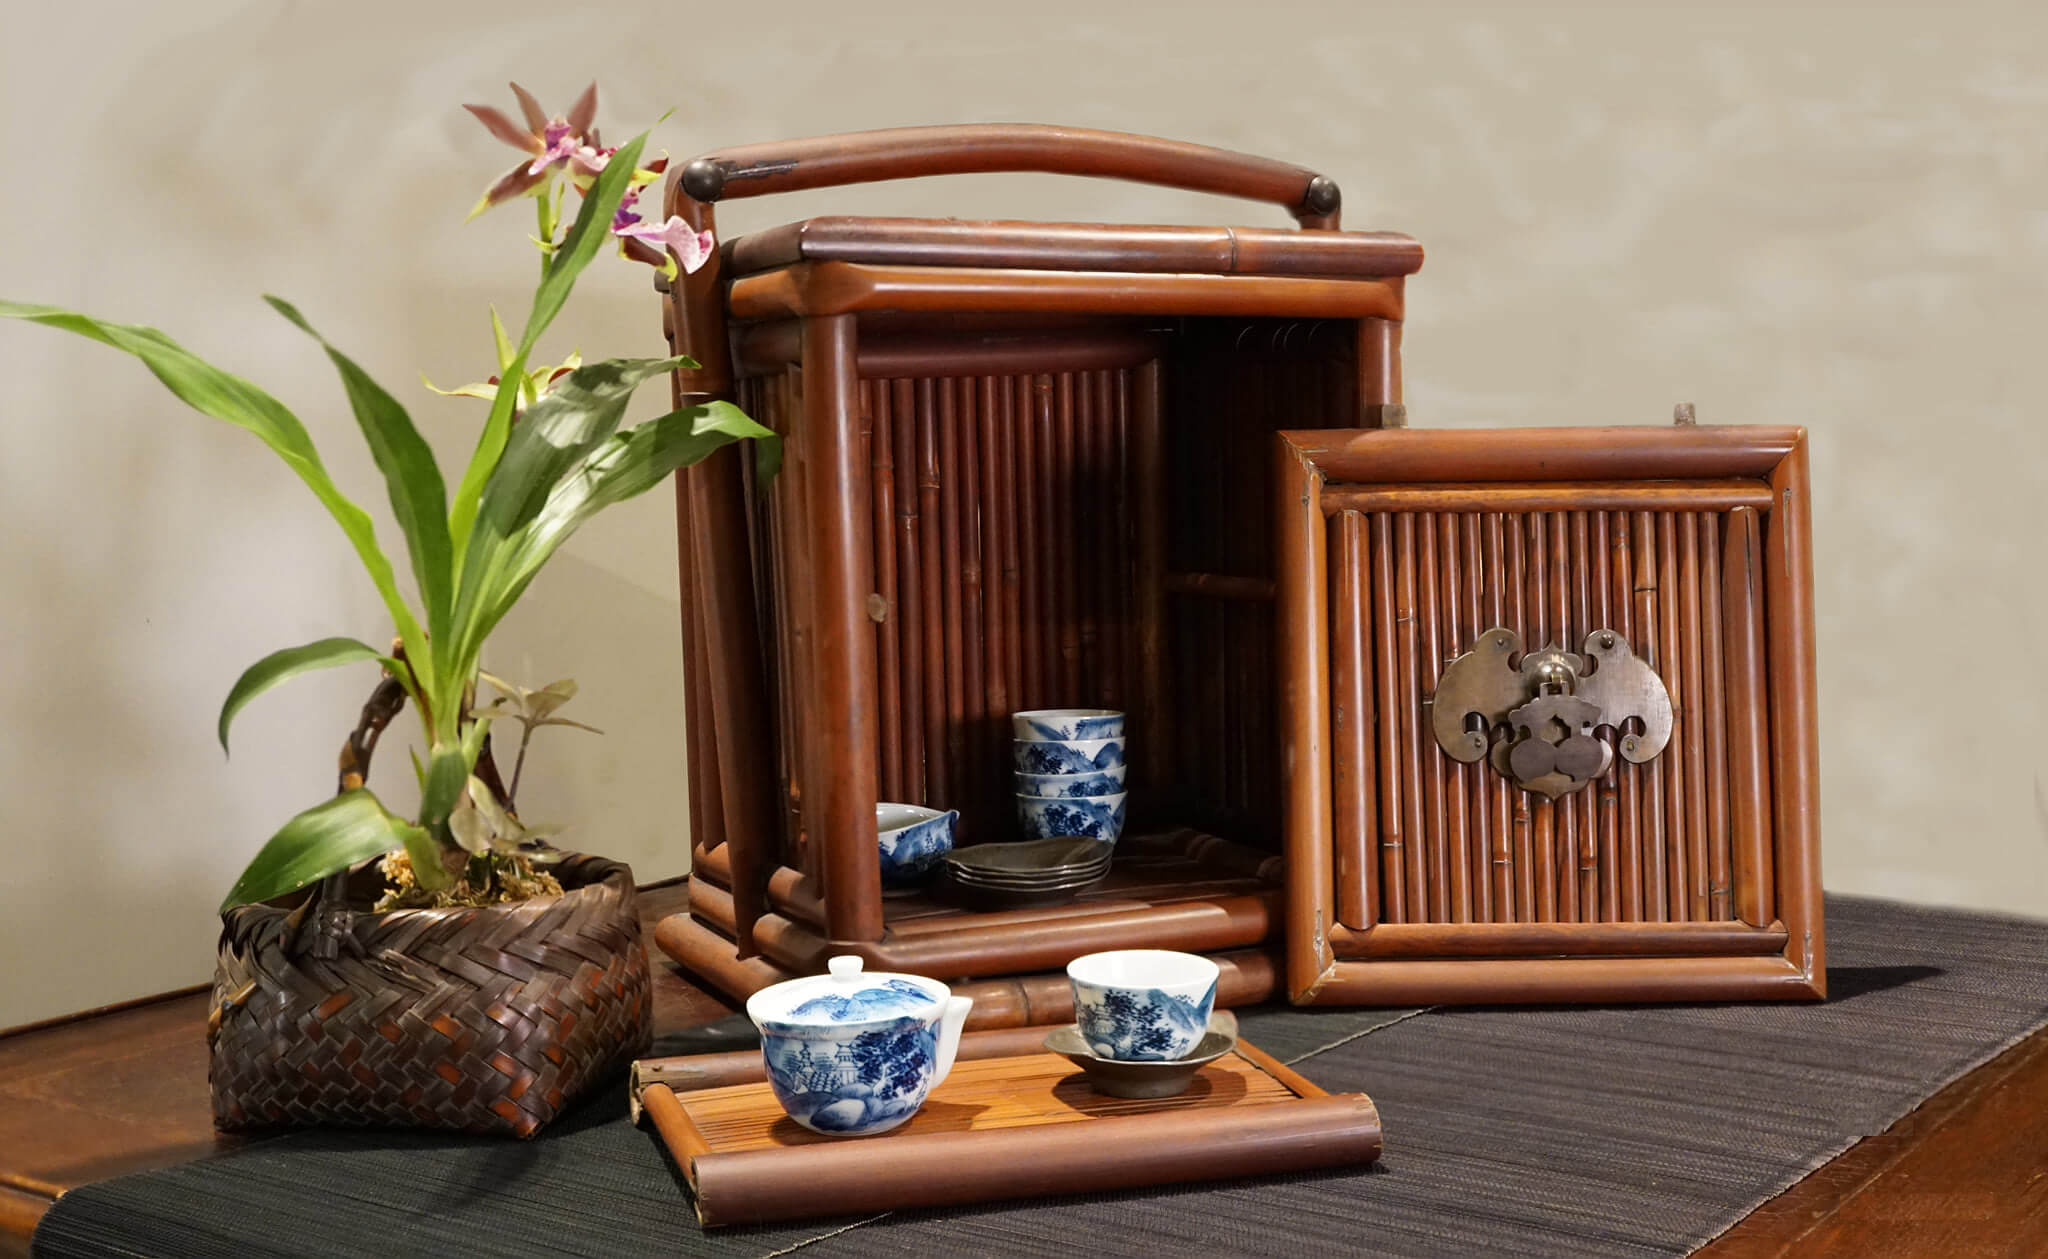 B3-7 一見‧菁桐 福壽雙全如意提樑老茶箱。圖 / 台北文華藝術博覽會提供。